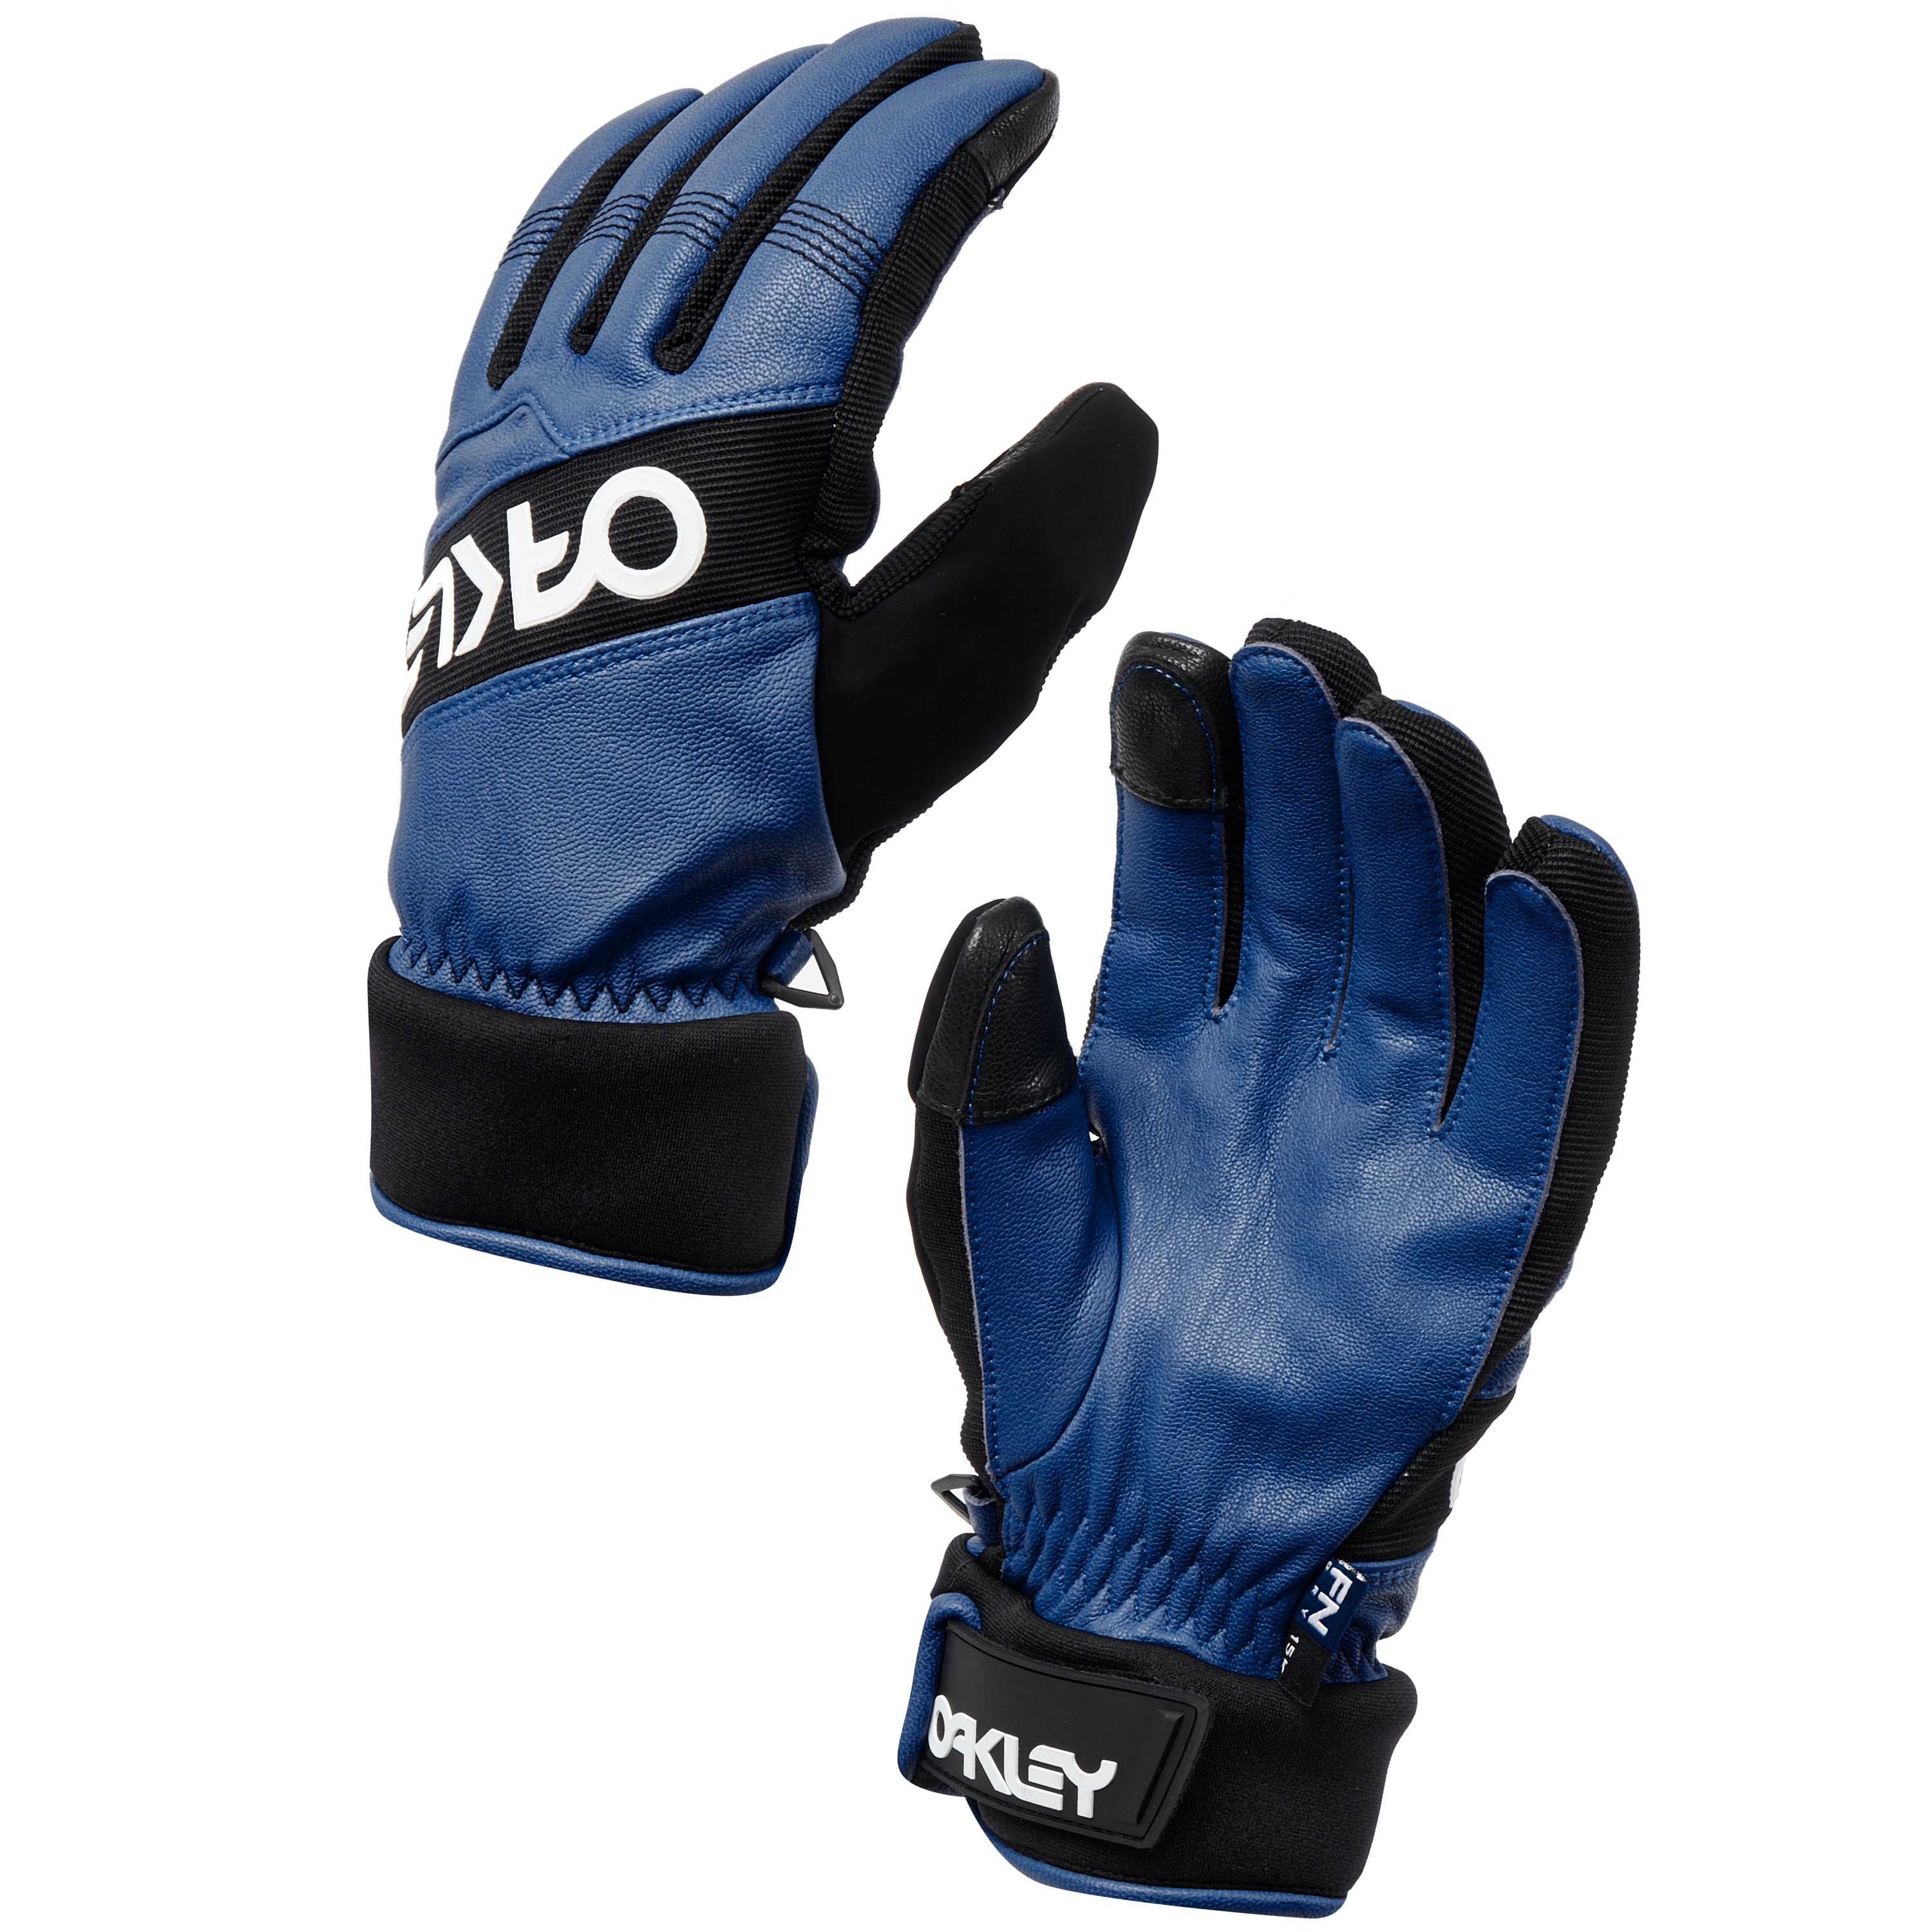 Oakley Factory Winter Glove 2 - Dark 